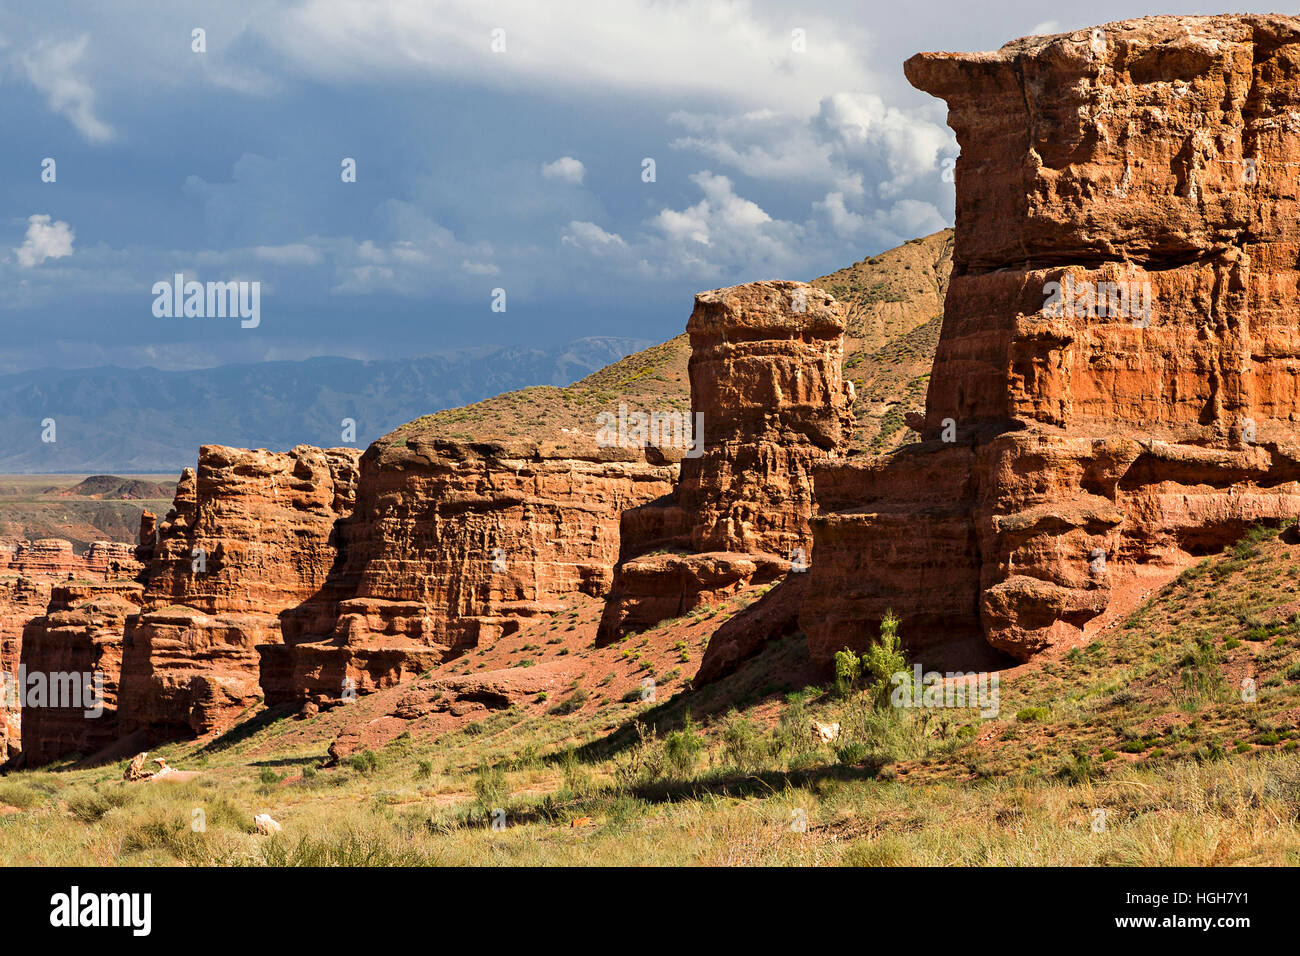 Canyon auezov et la vallée des châteaux connus sous le nom de Grand Canyon du Kazakhstan Banque D'Images